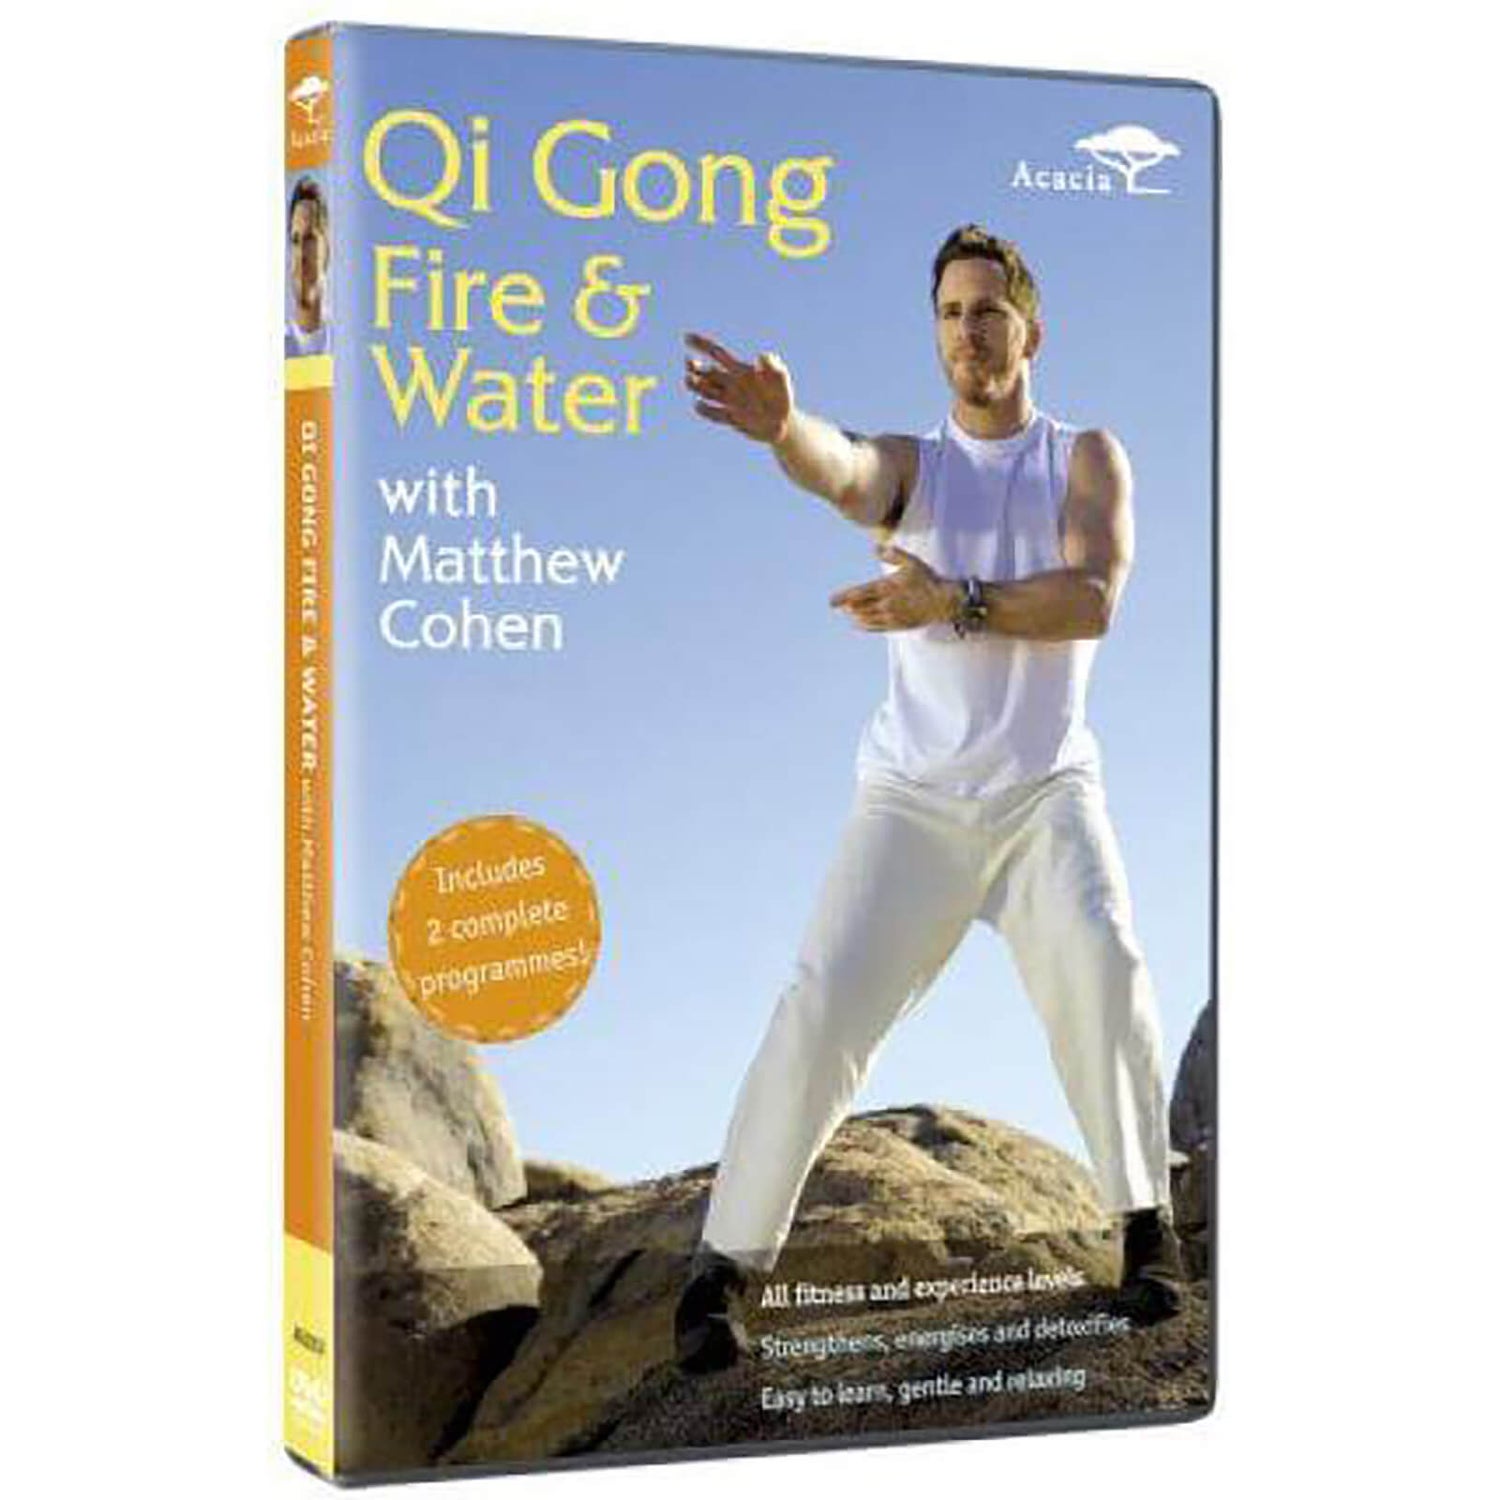 Qi Gong Fire